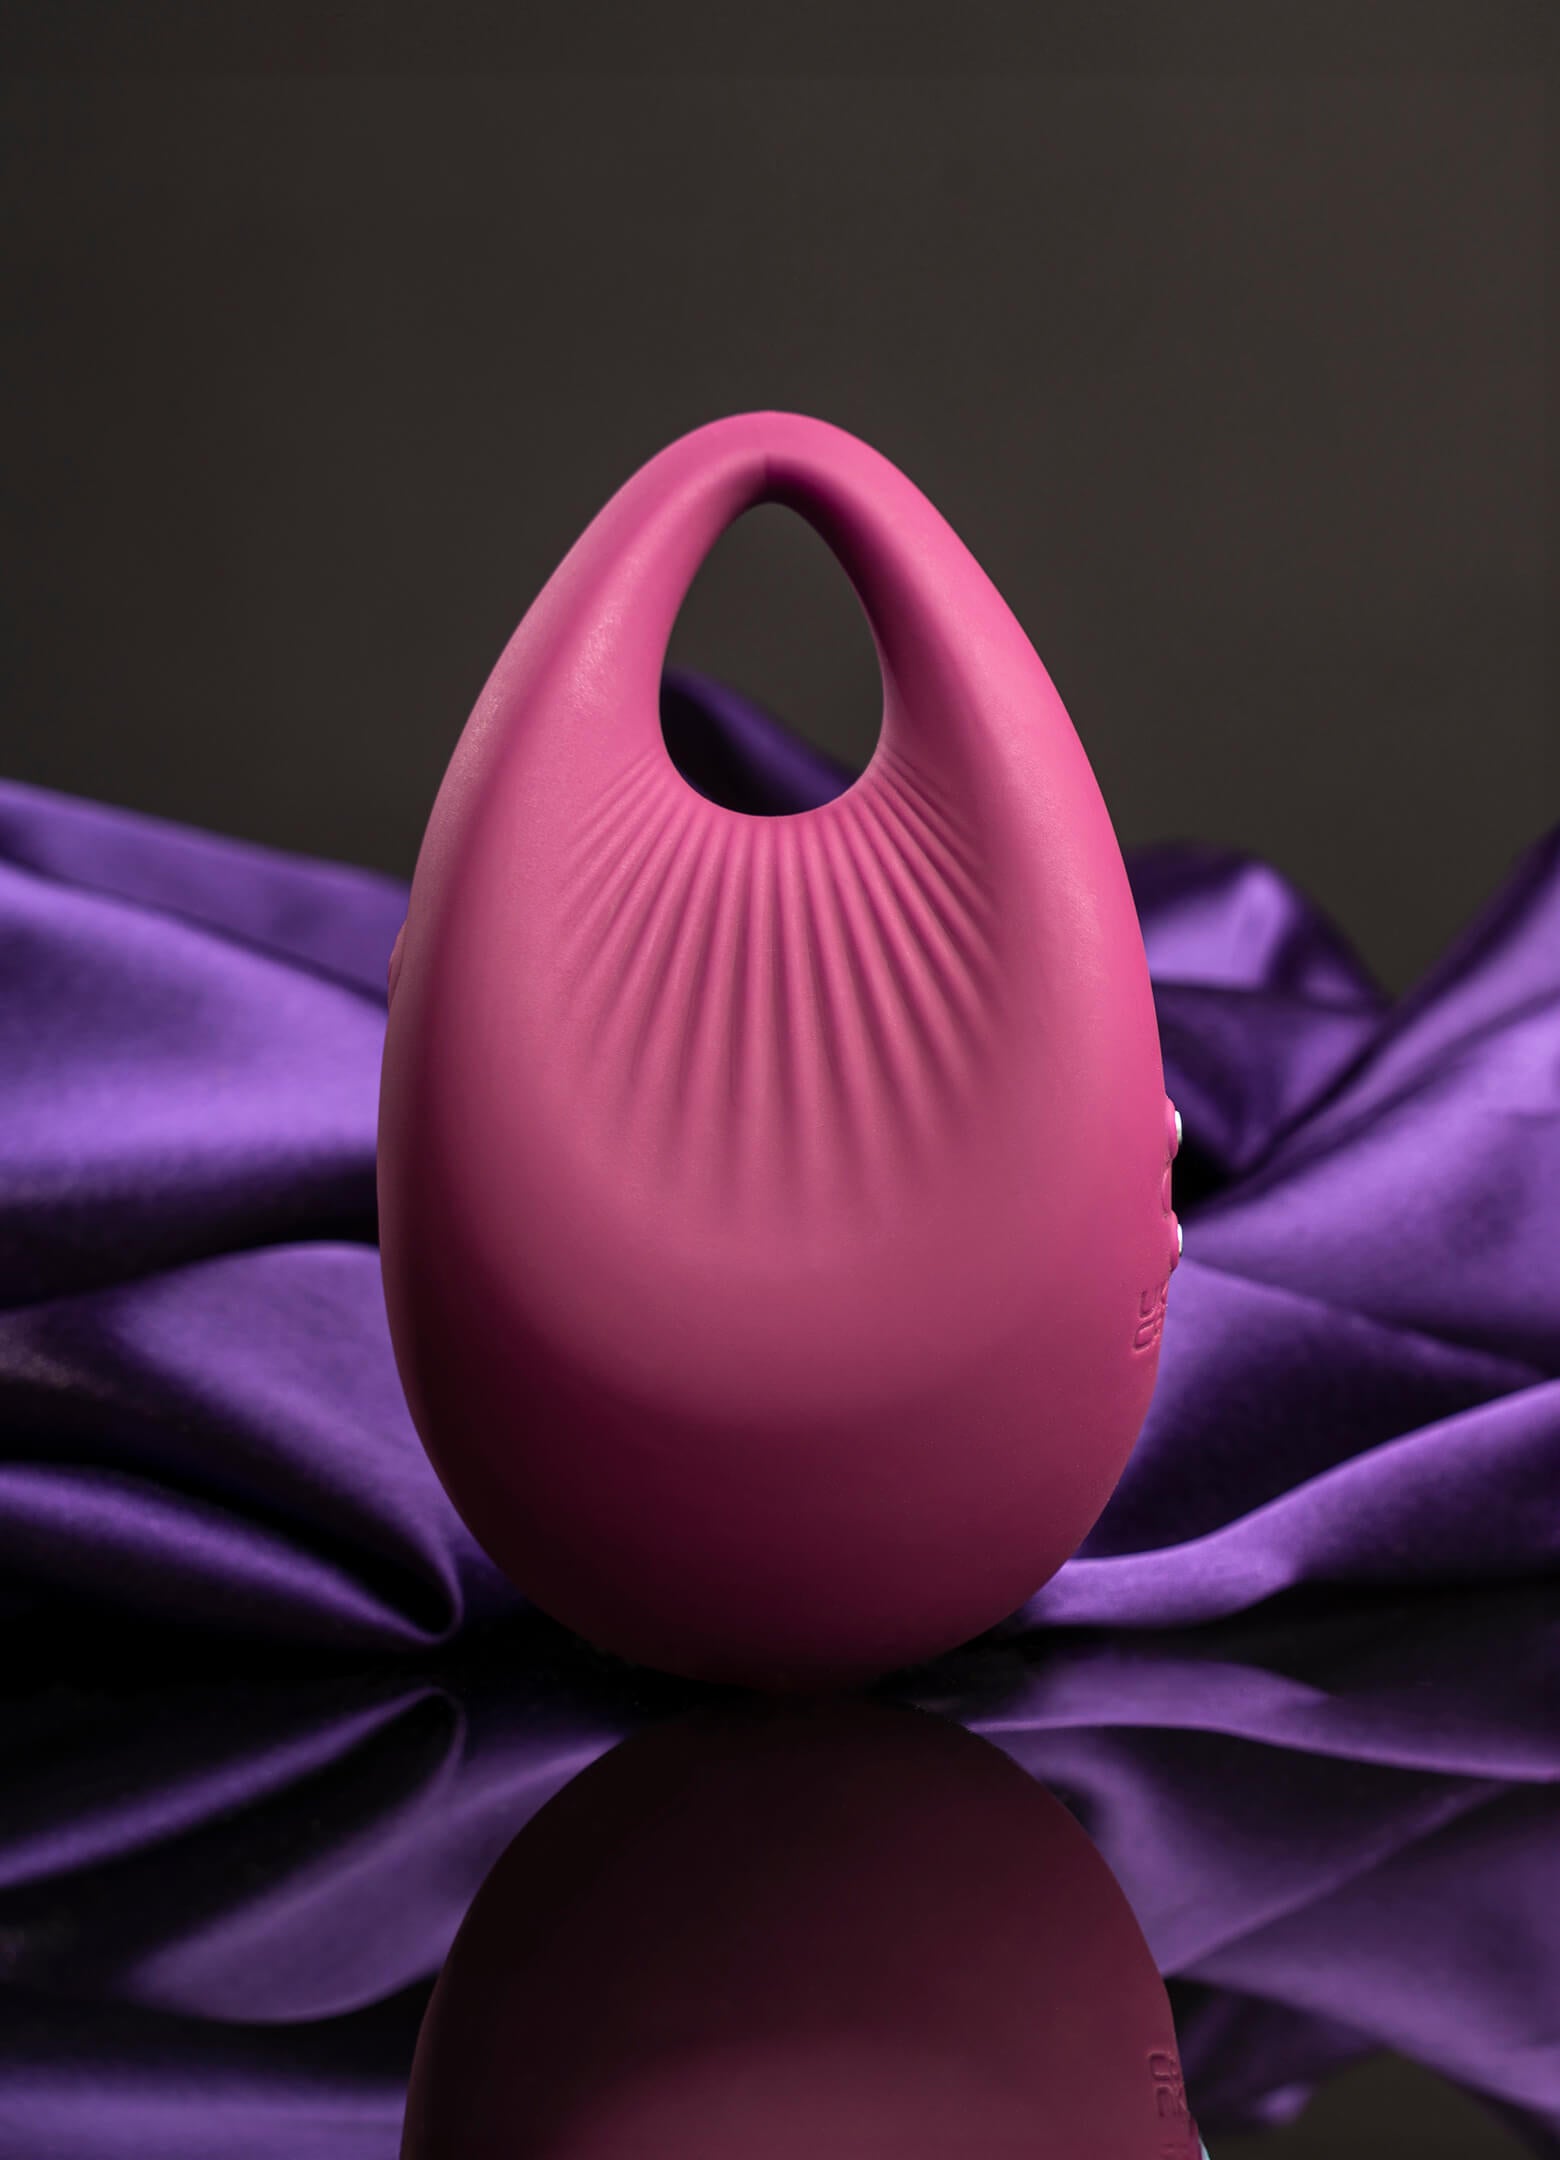 Pear shaped burgundy finger vibrator.